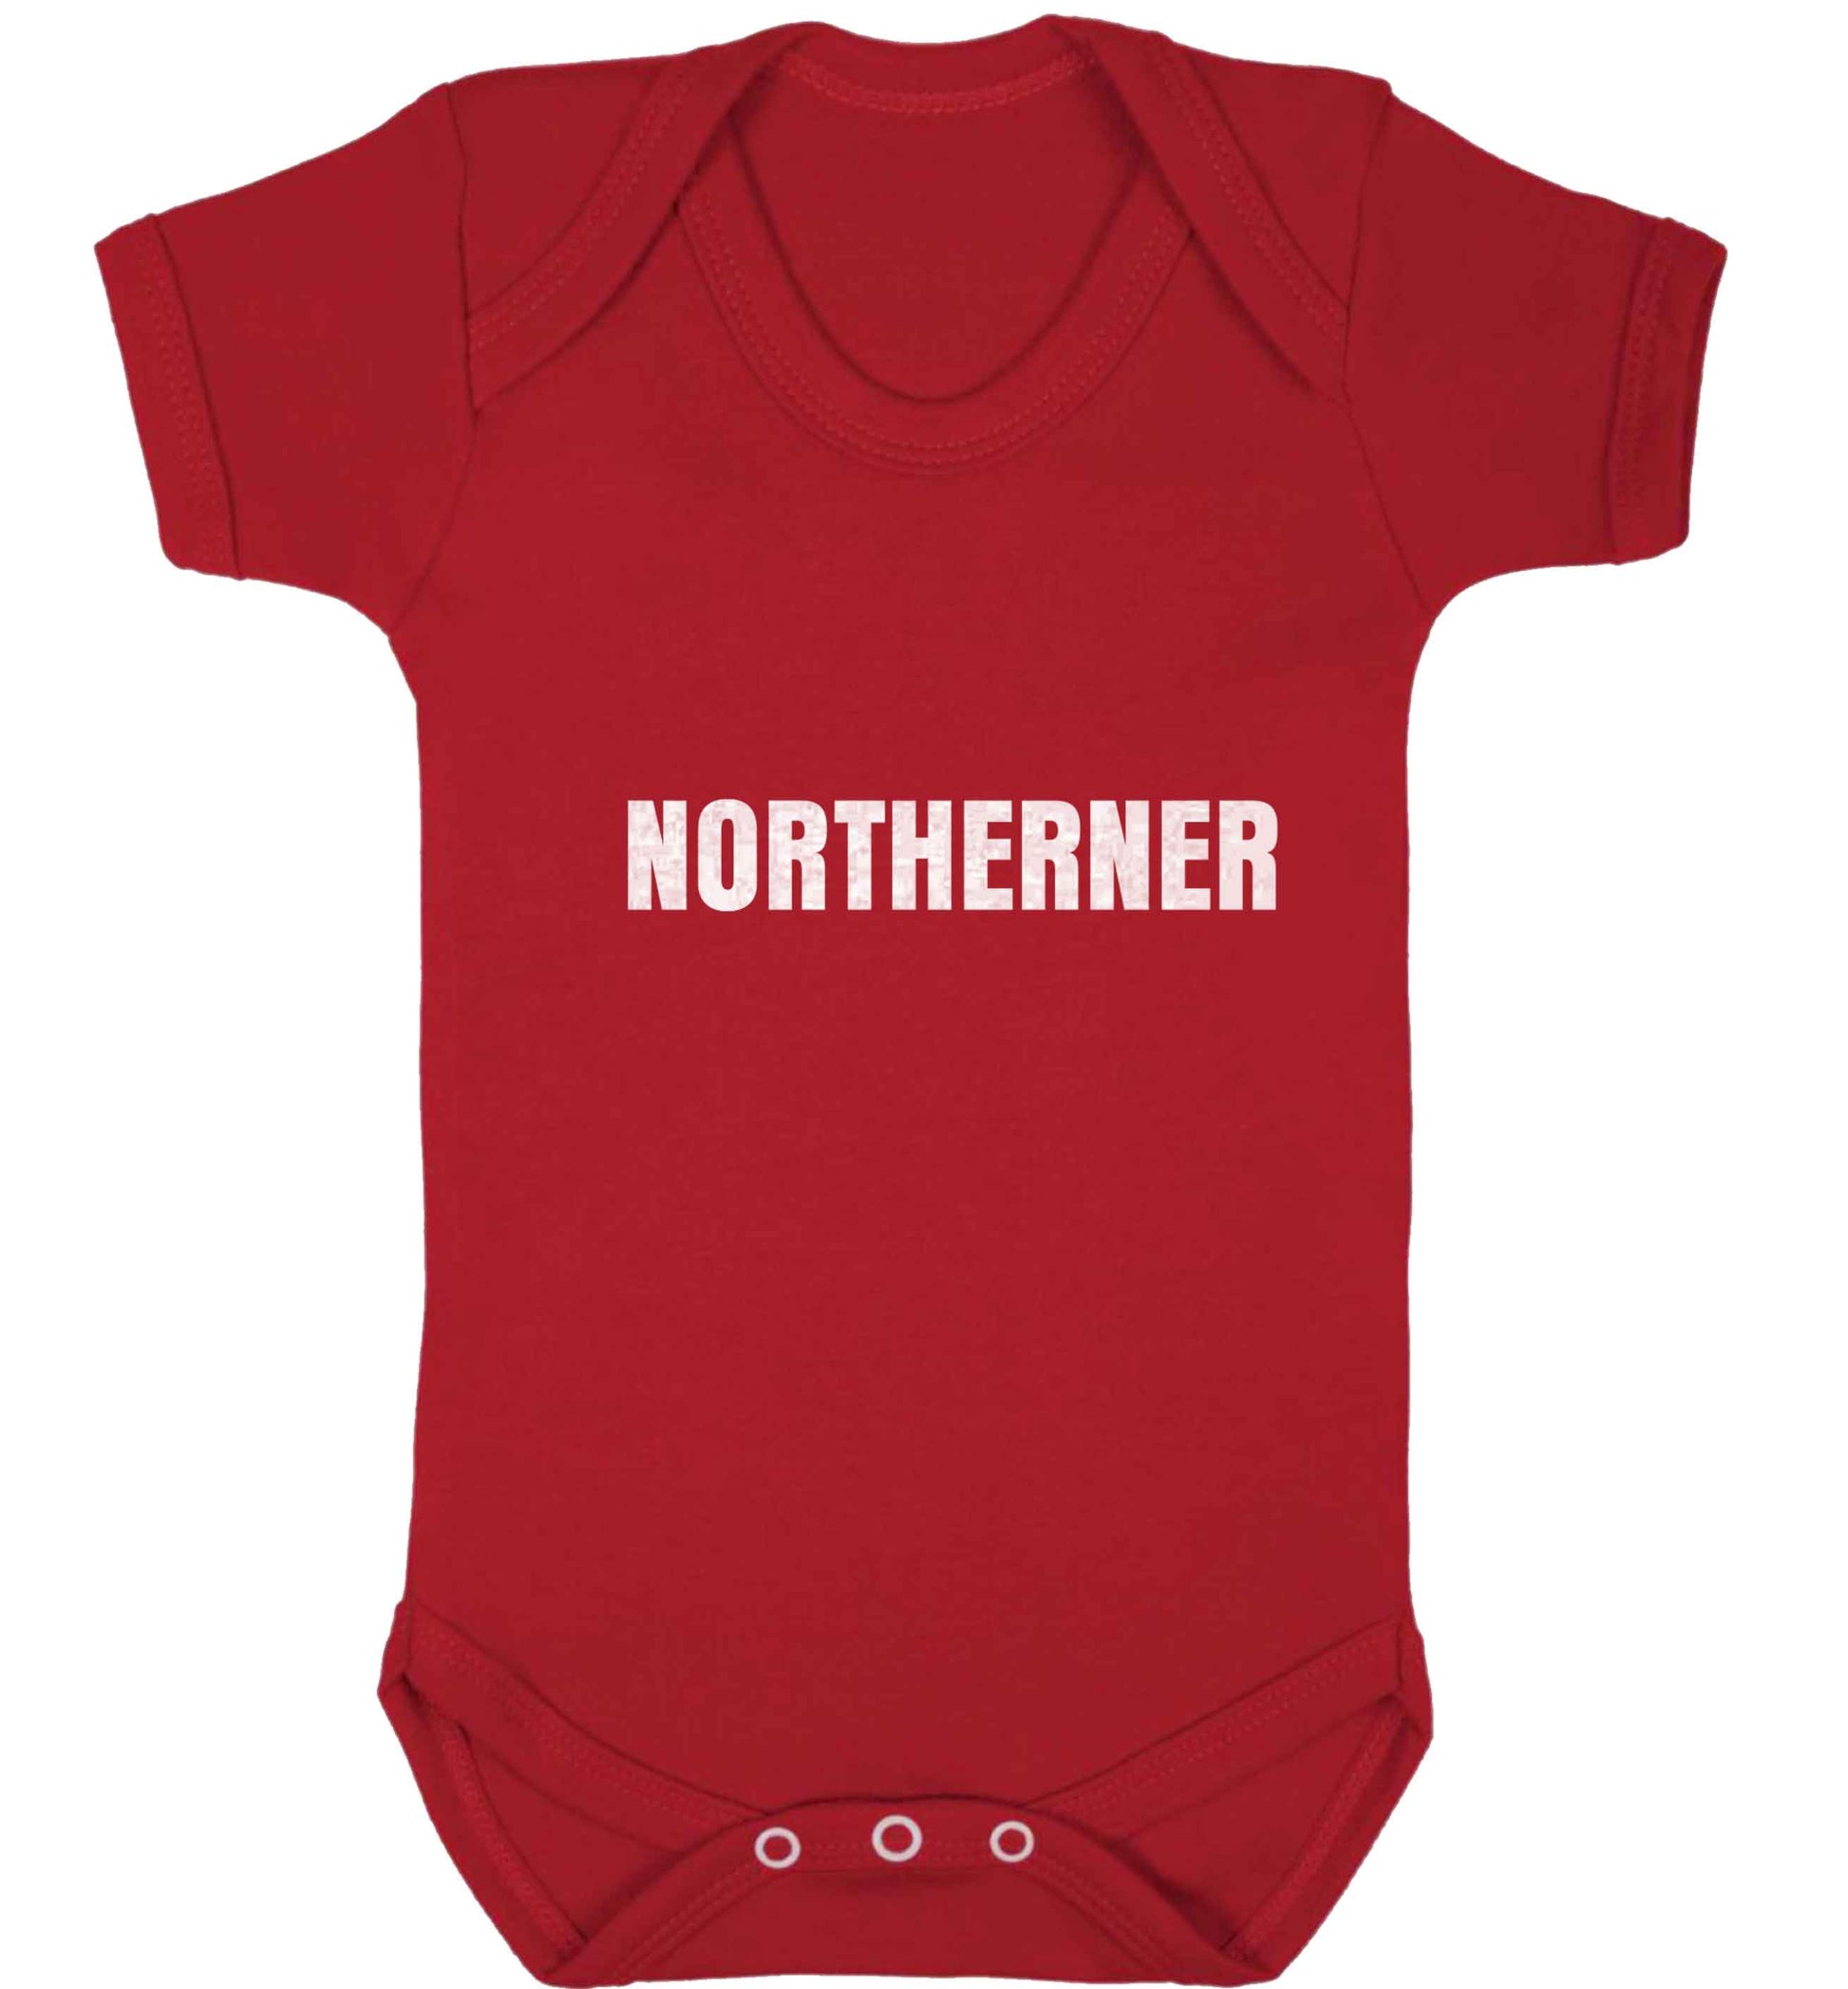 Northerner baby vest red 18-24 months